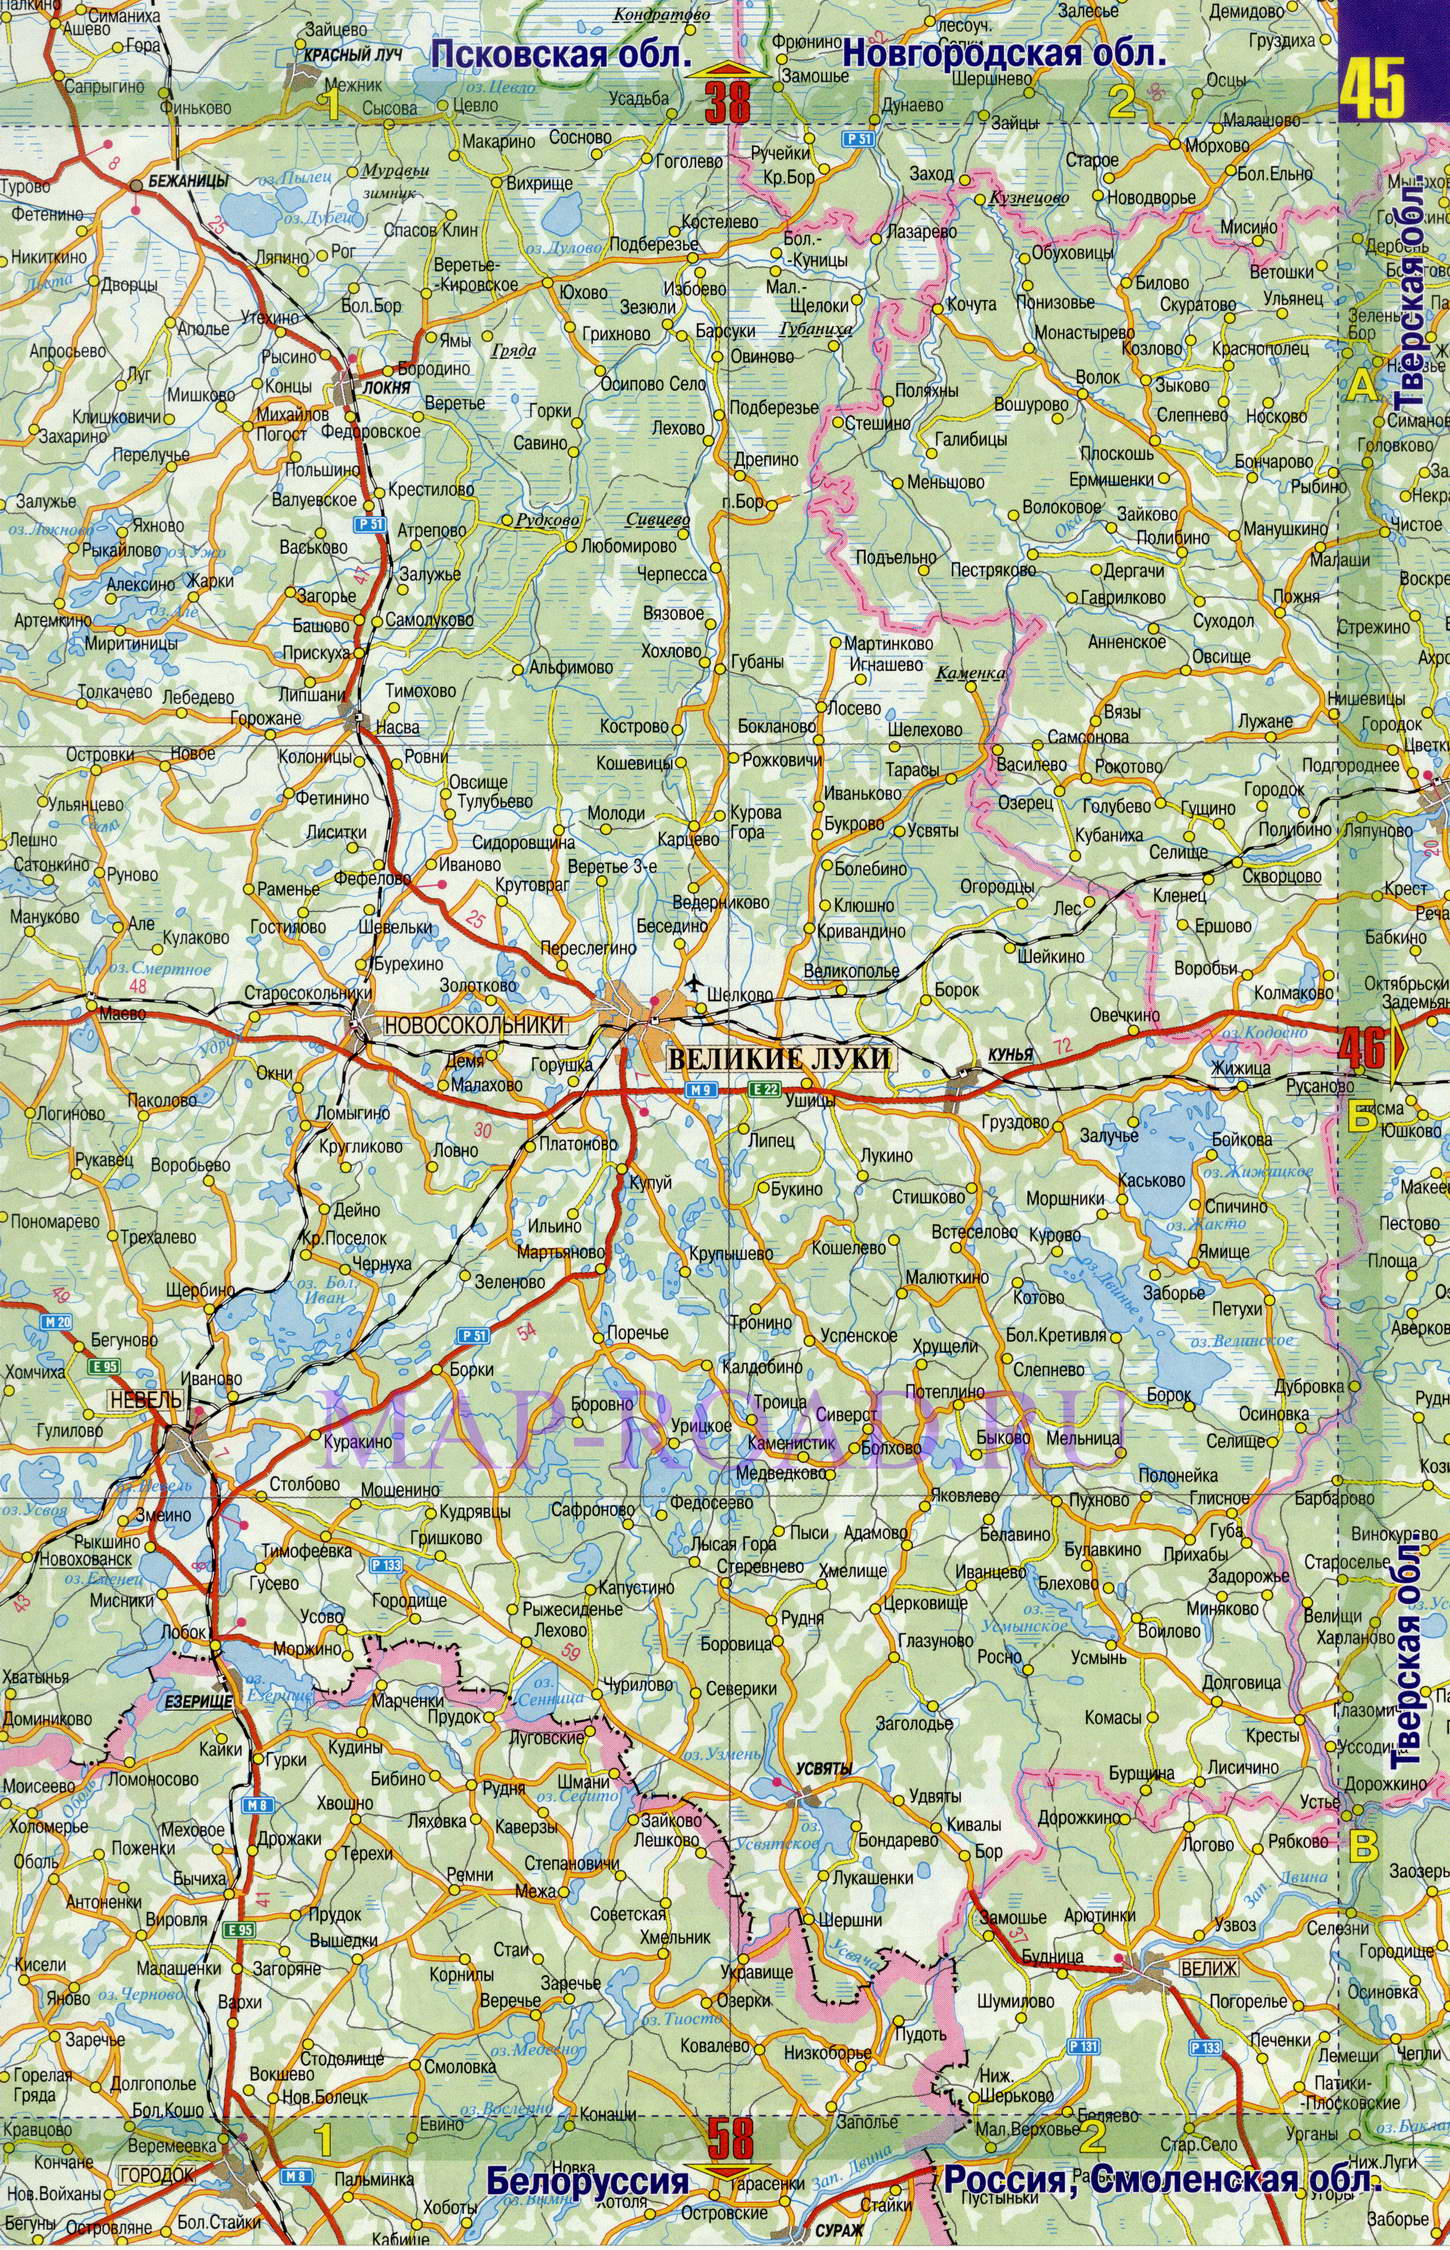 Подробная карта дорог Псковской области. Карта масштаба 1см:7км - Псковская область, B1 - 